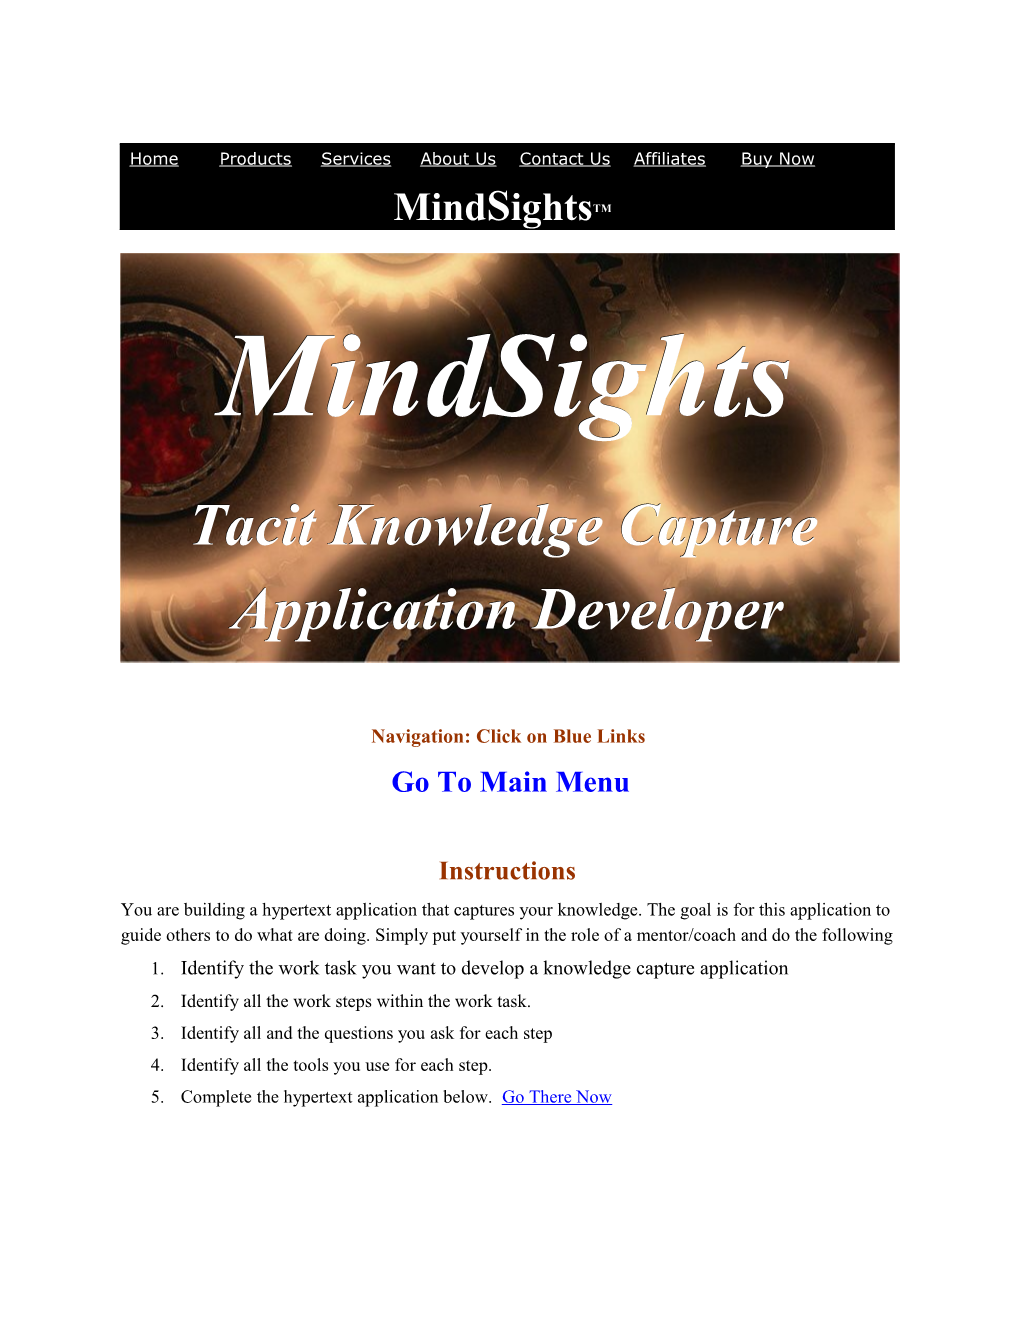 Mindsights Knowledge Application Developer